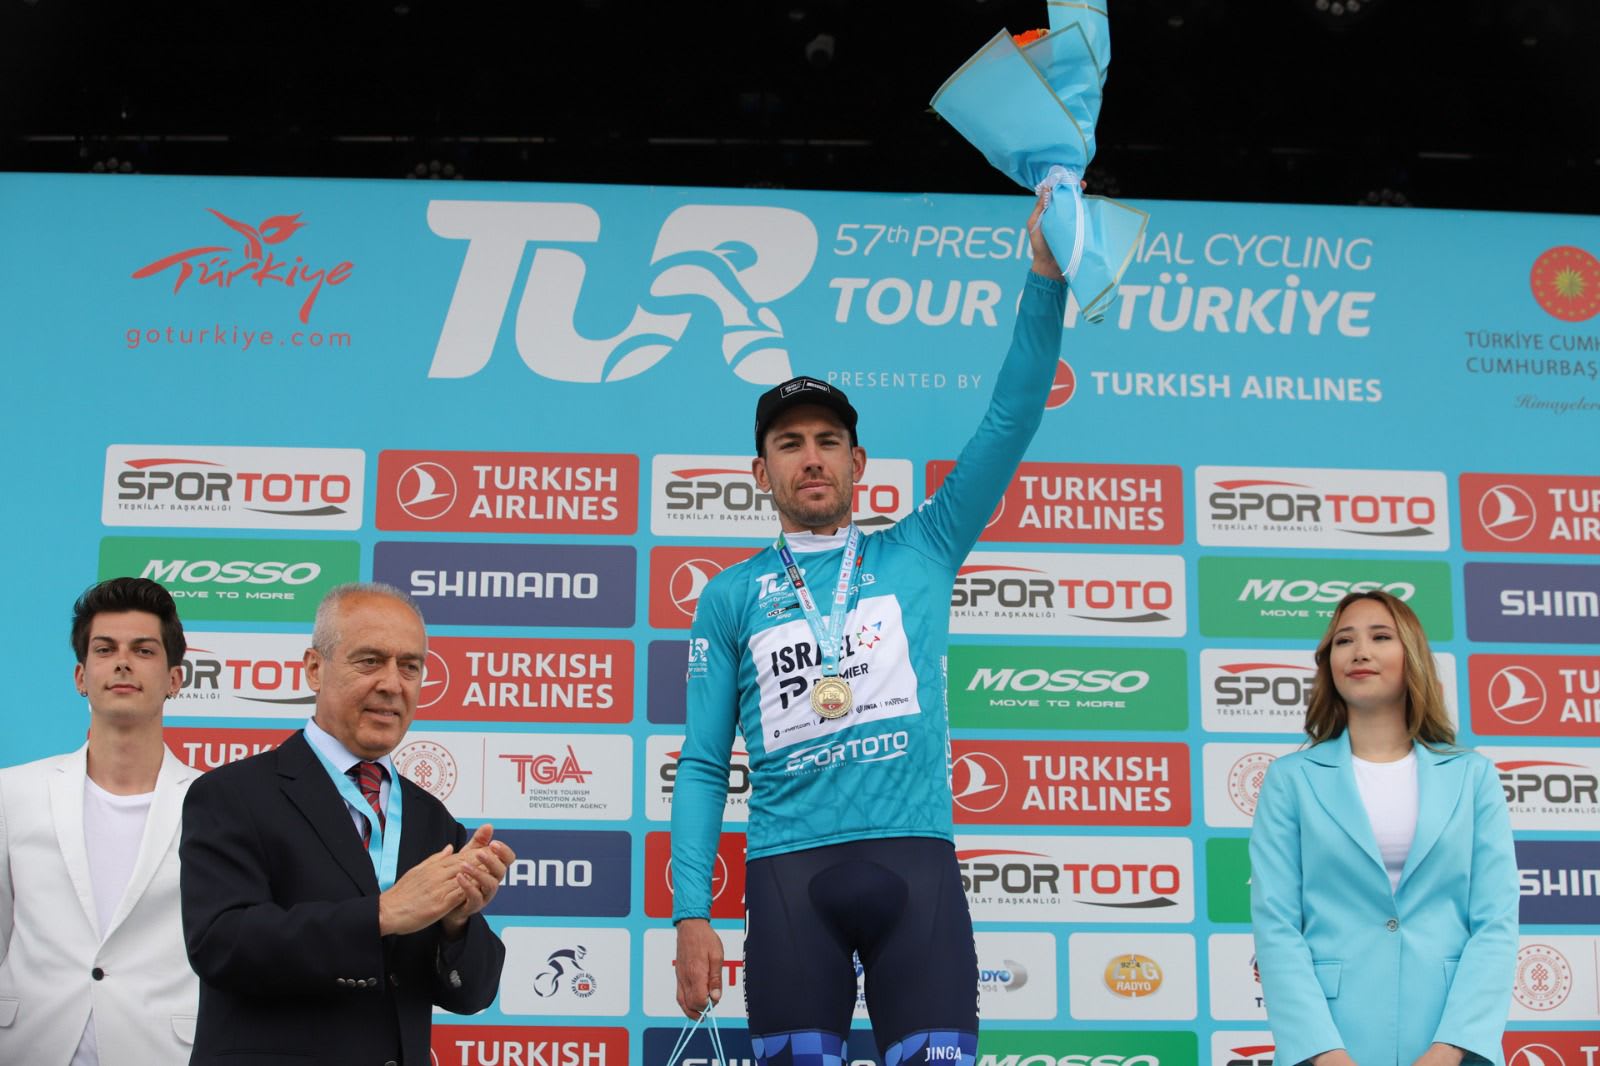 פטריק בווין, רוכב קבוצת האופניים "שראל פרמייר טק" שזכתה בטור בטורקיה